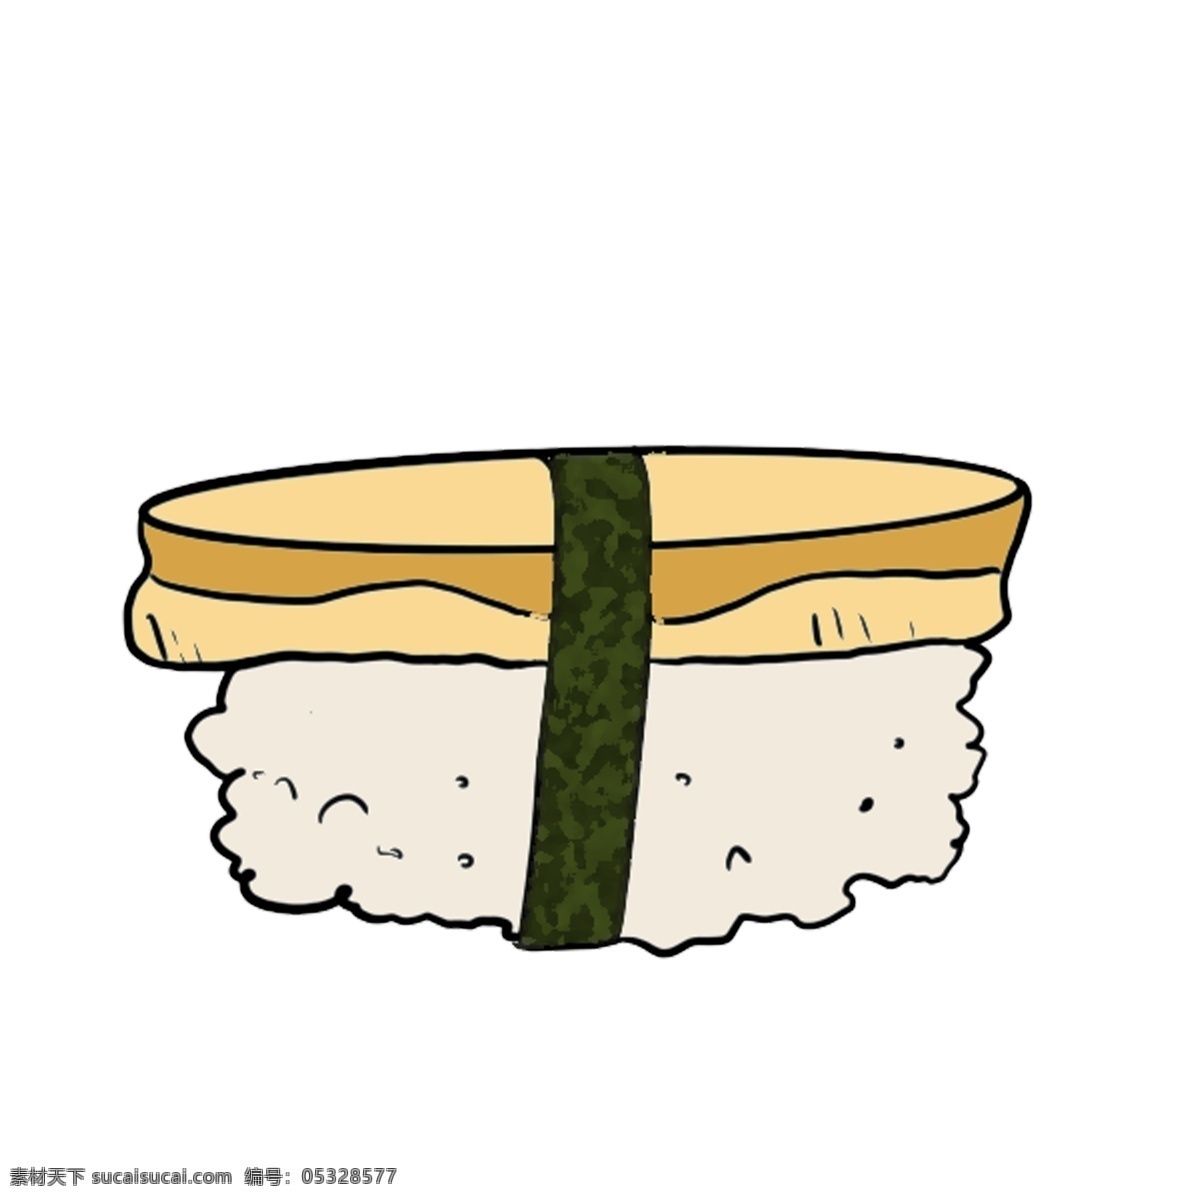 日本 寿司 美食 插图 日式寿司 日本寿司 寿司美食 生鱼片寿司 盘子 日本寿司食物